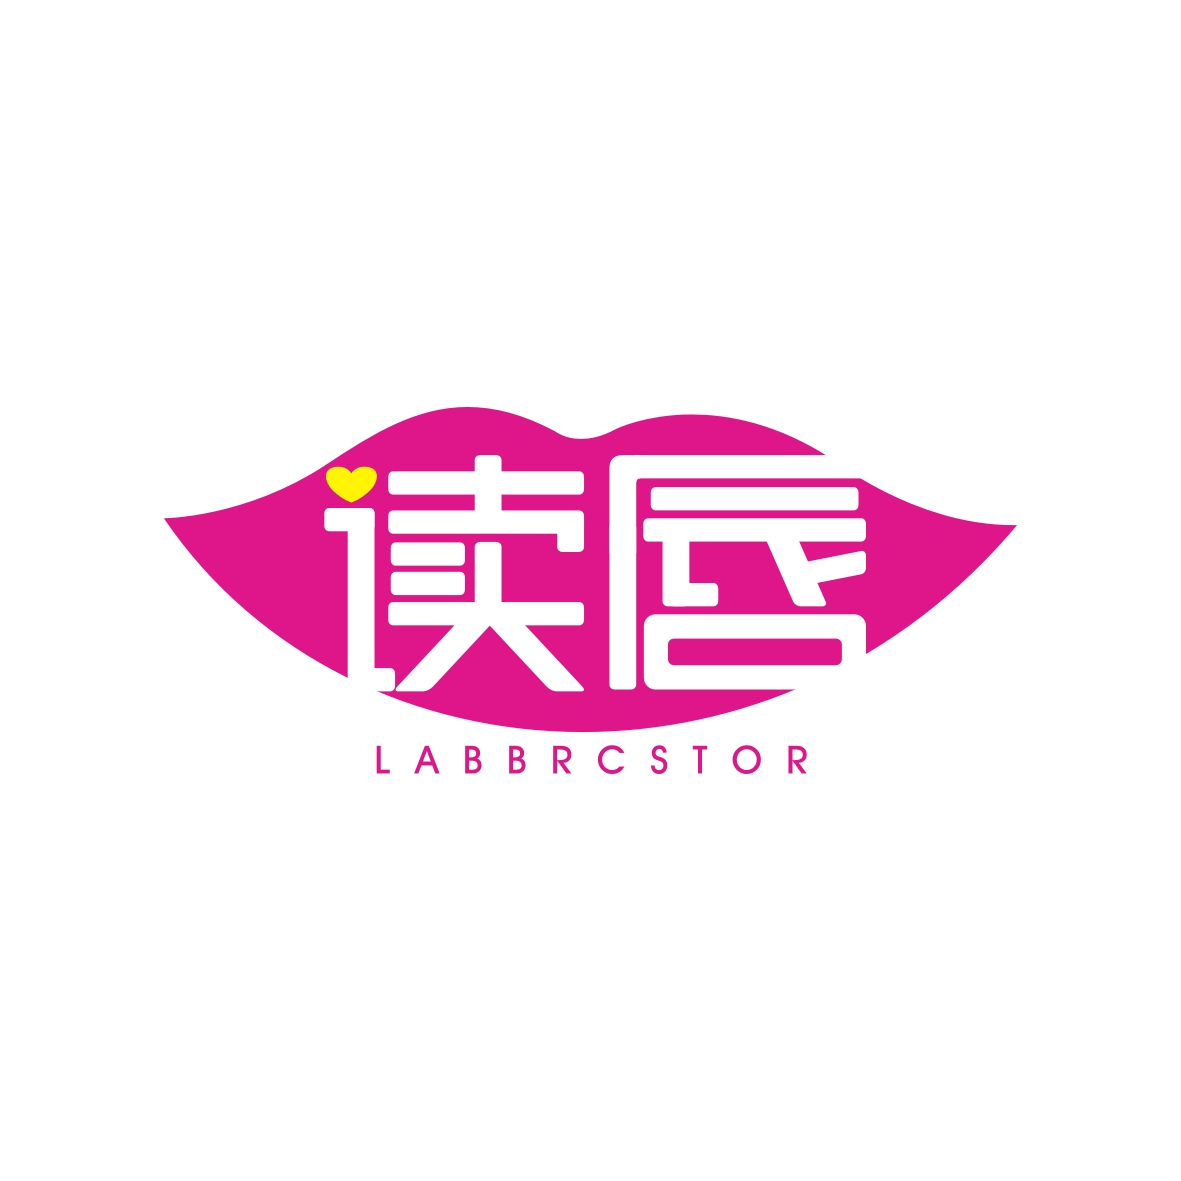 九八零（广州）科技有限公司商标读唇 LABBRCSTOR（03类）多少钱？